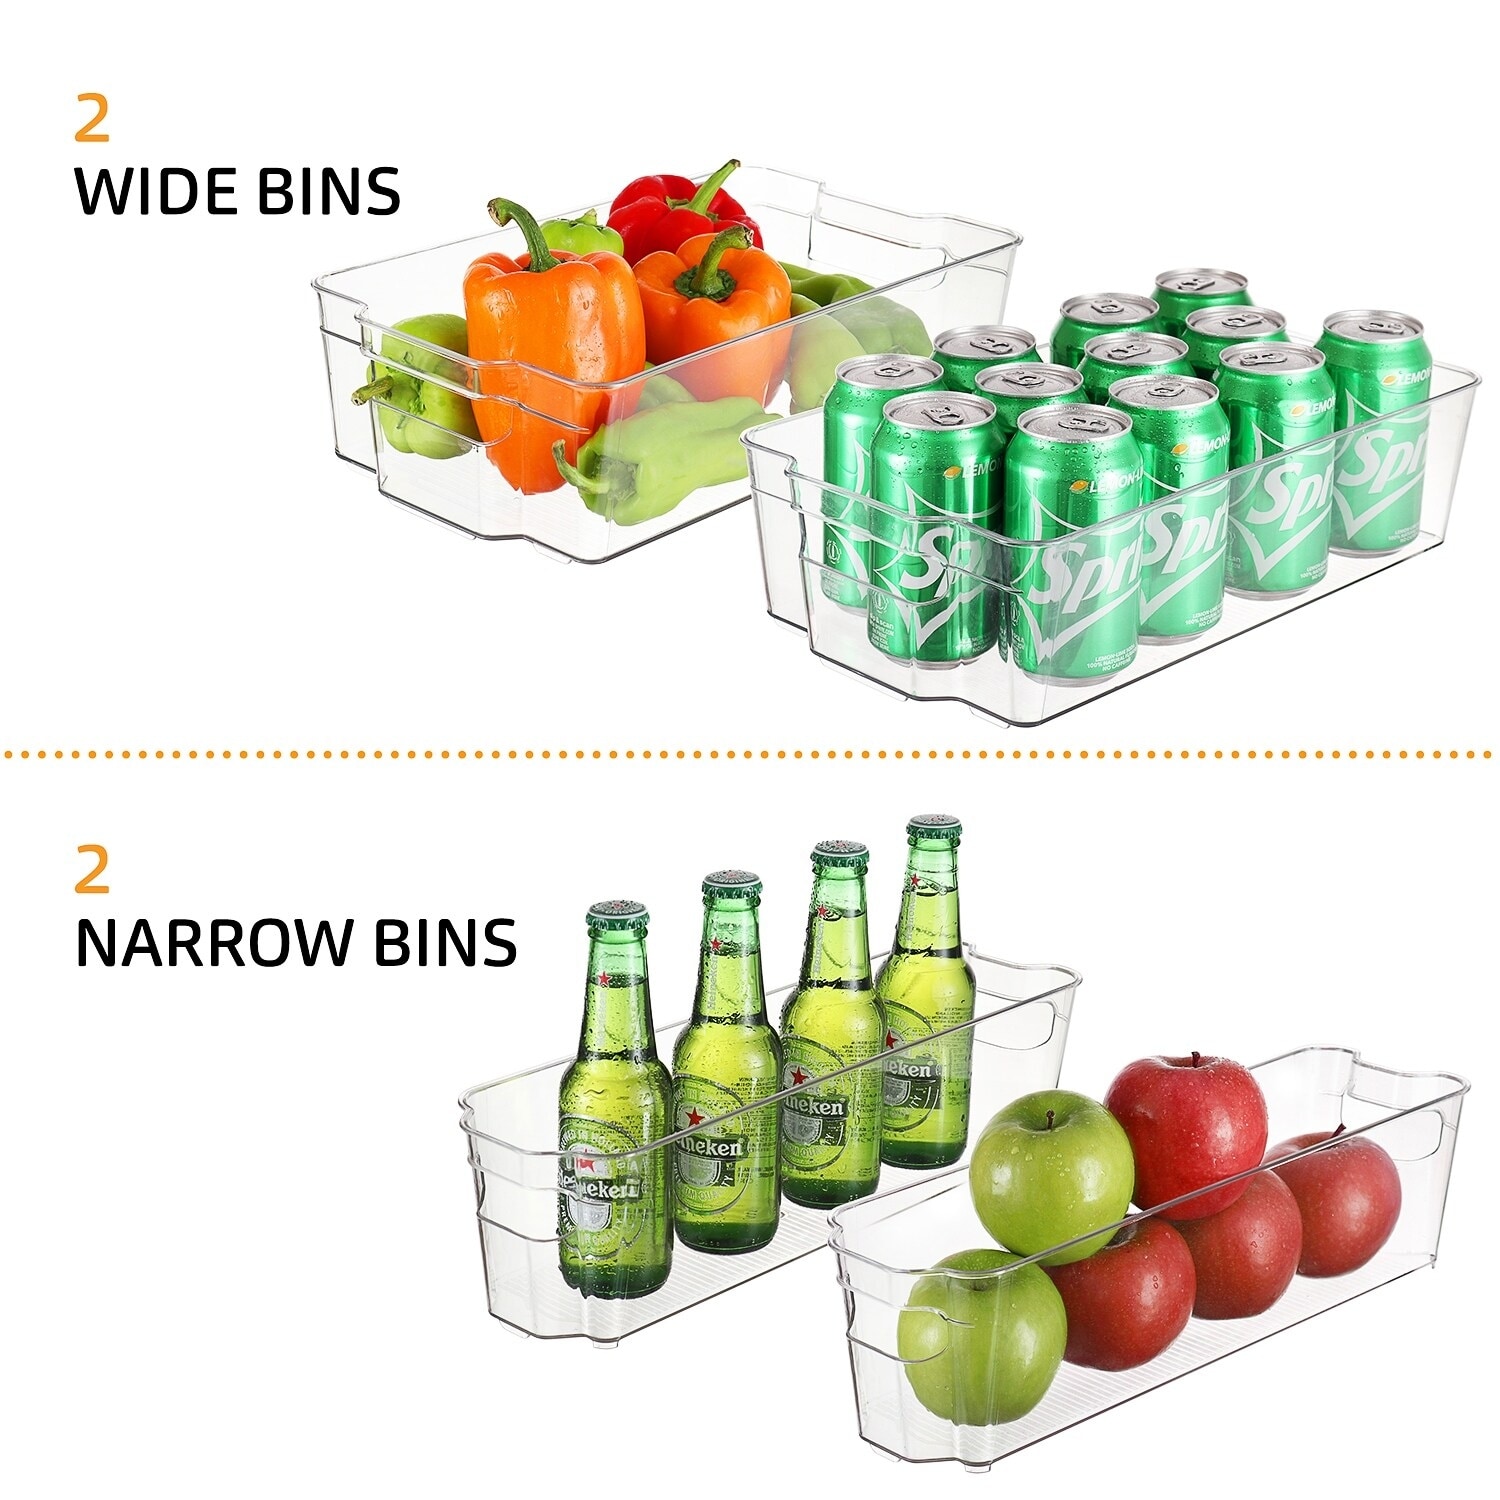 StorageBud Refrigerator Organizer Bins - Stackable Fridge Storage